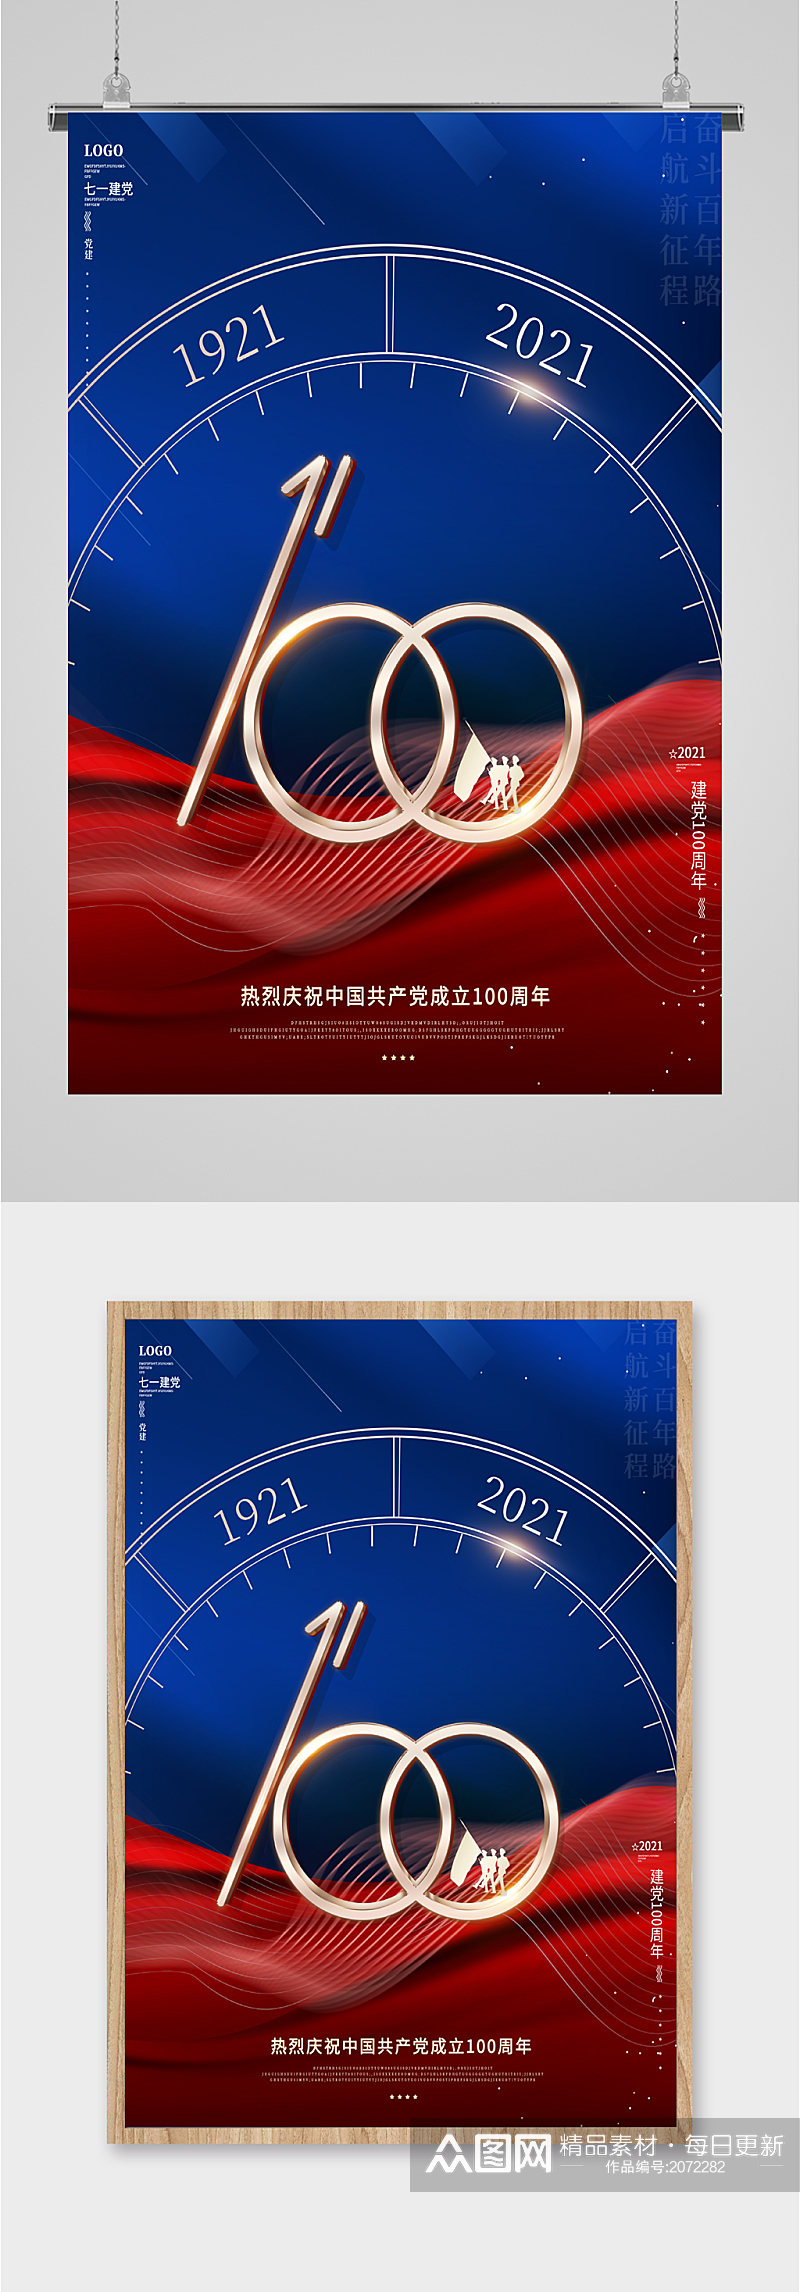 祝贺共产党成立一百周年海报素材